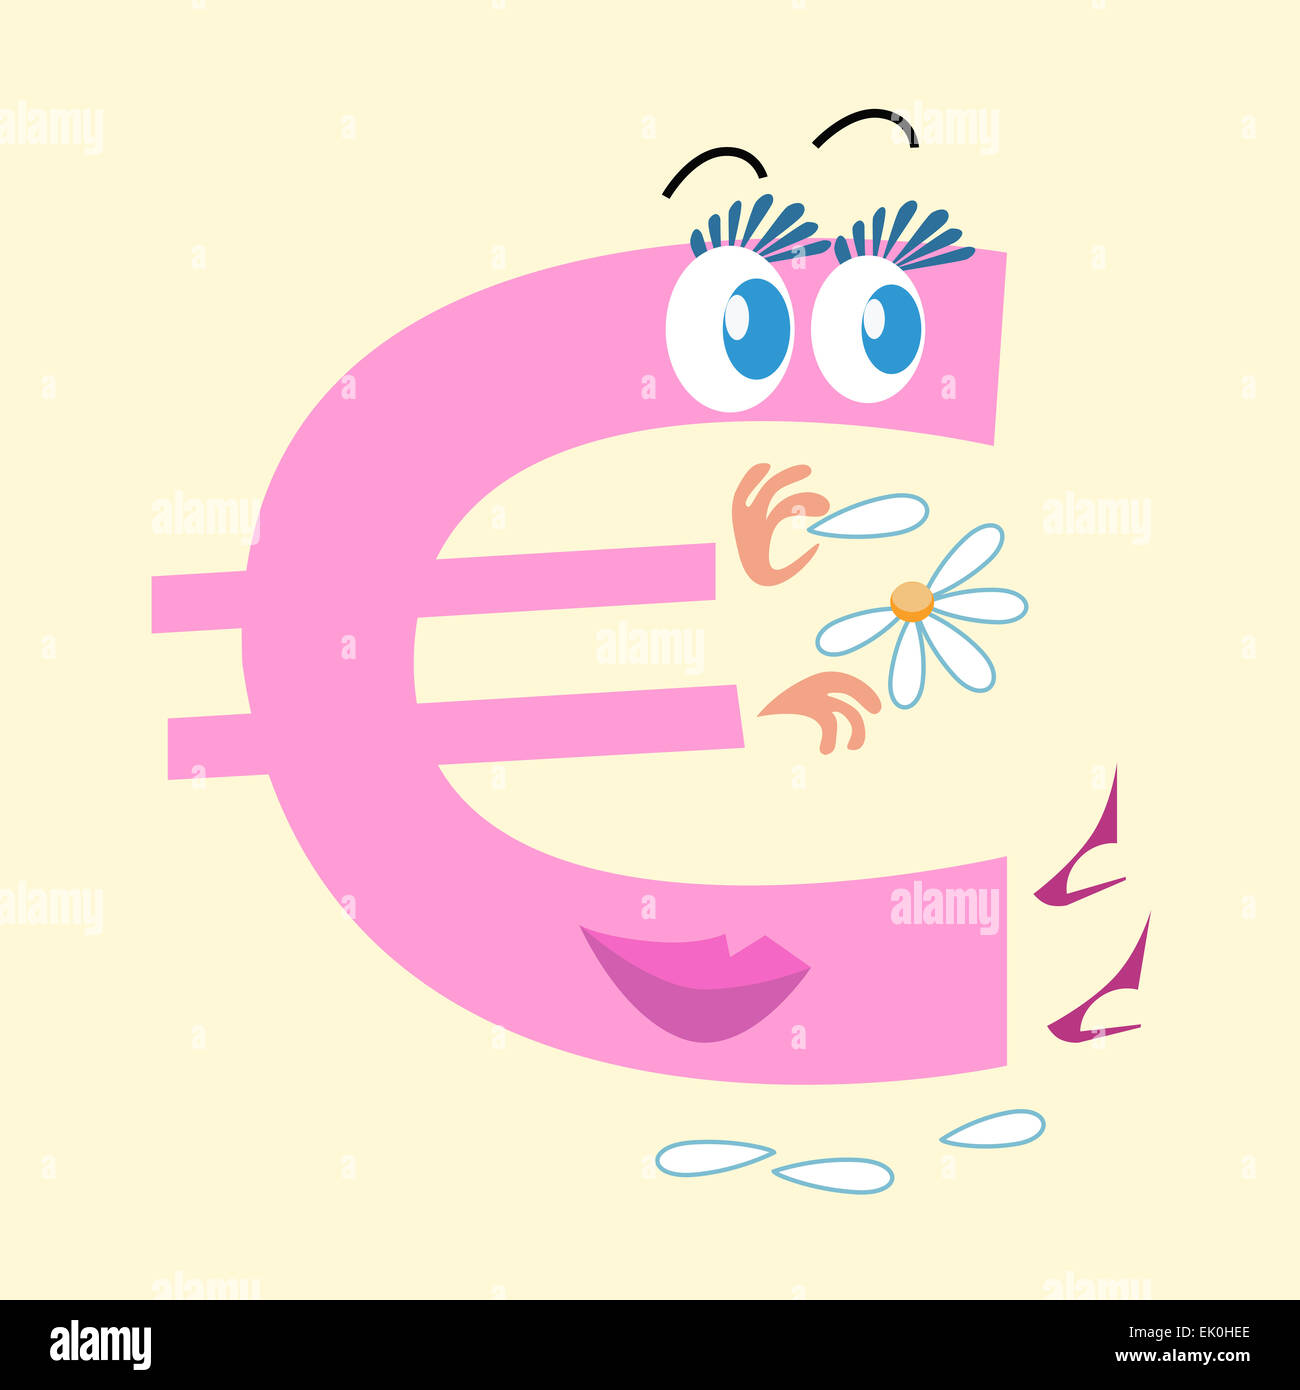 Die Euro-Zeichen ist die nationale Währung Europas. Der Charakter des Euro-Zeichens wundert auf Gänseblümchen Liebe ihn oder nicht. Geschäft Stockfoto